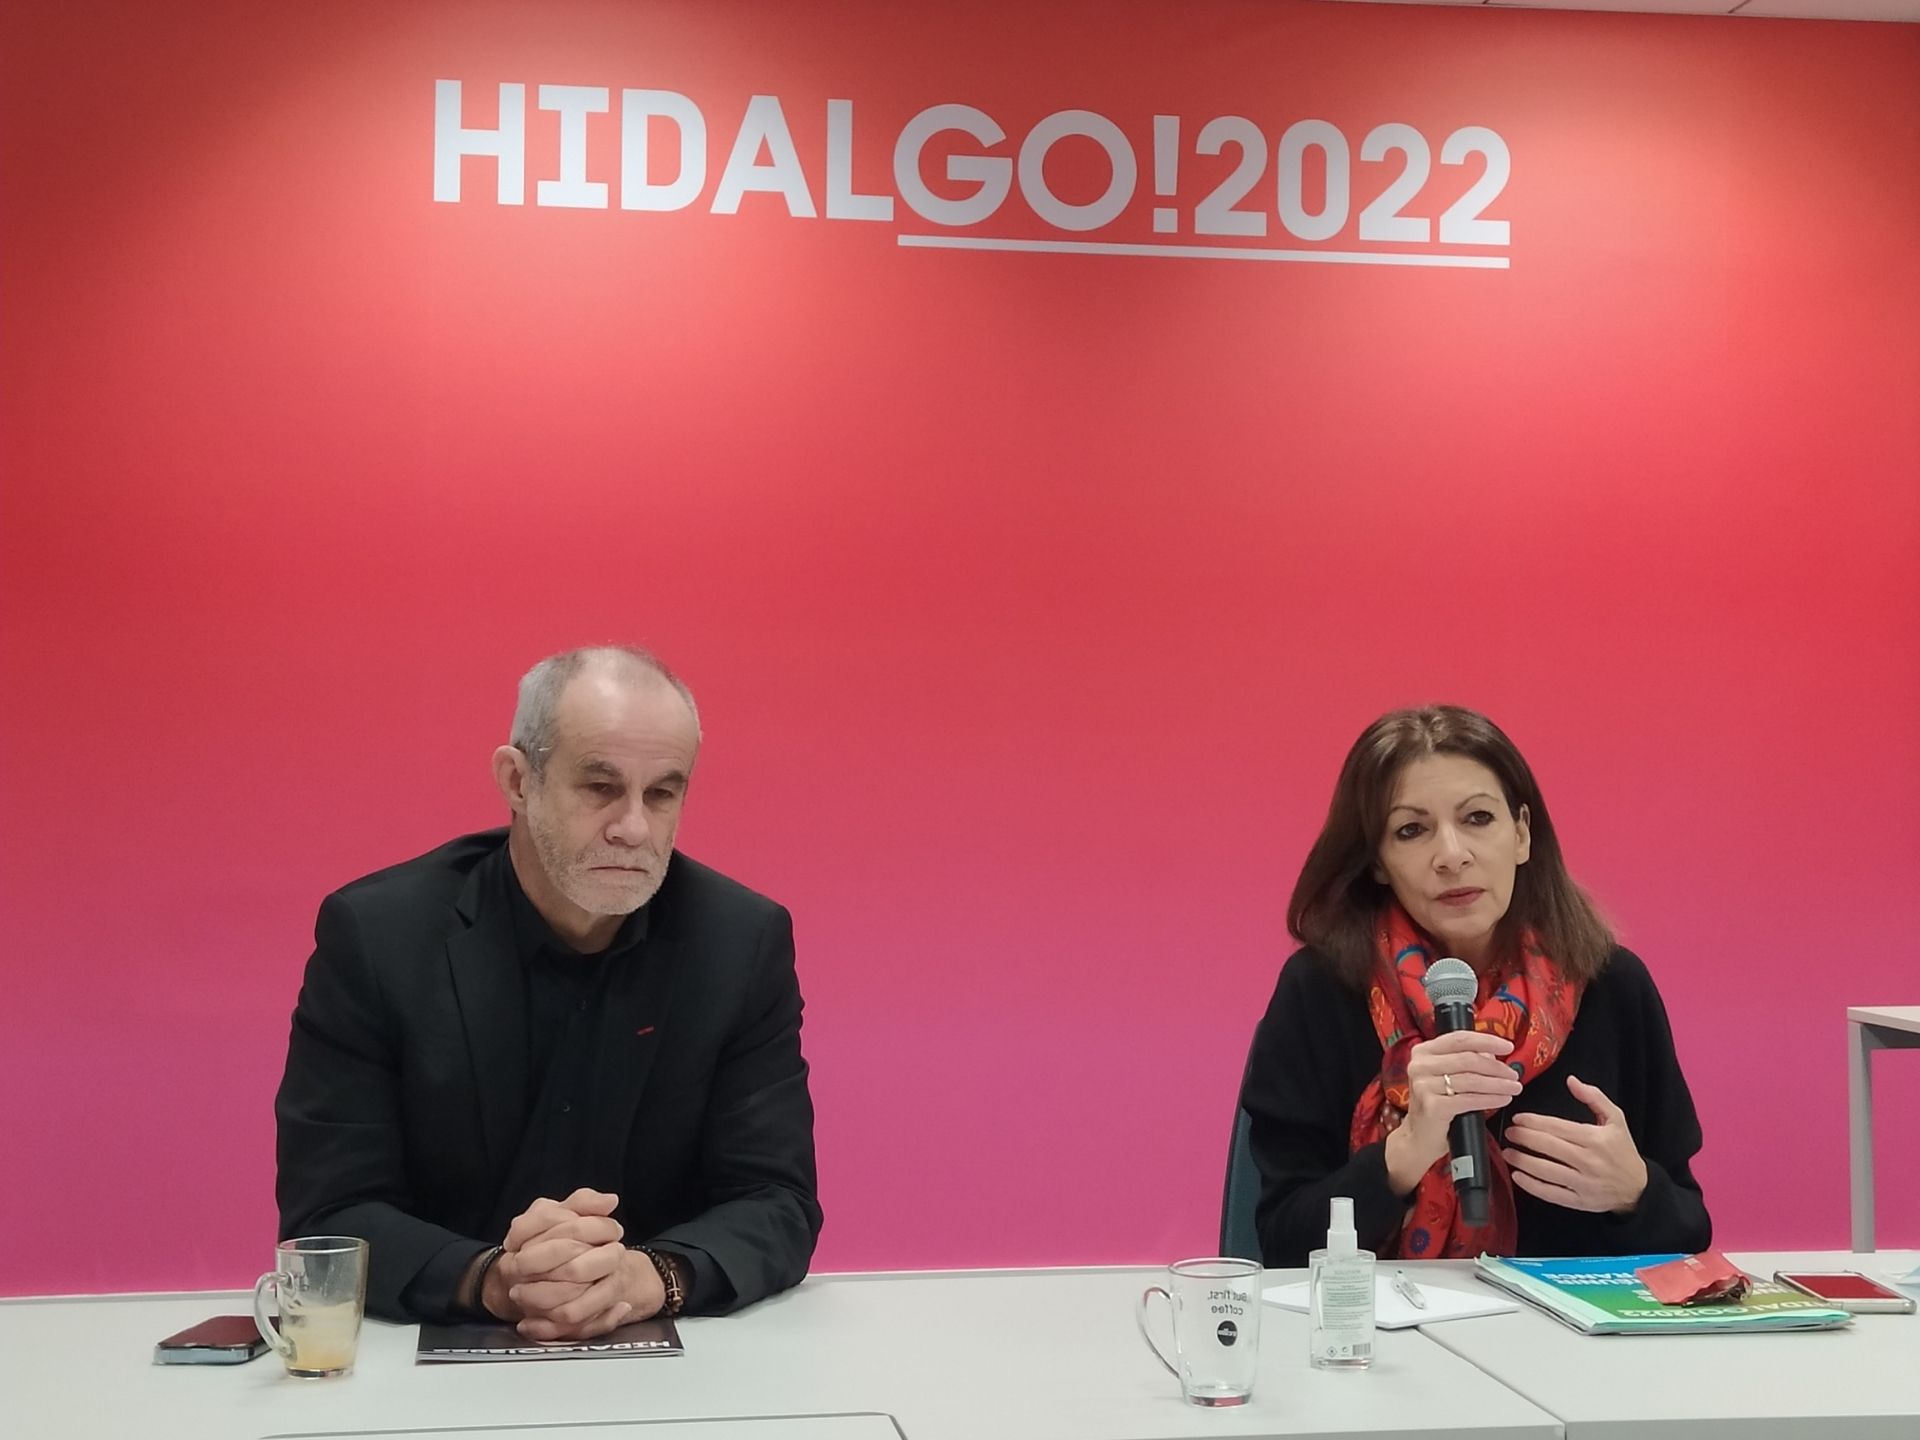  Hidalgo veut répondre aux crises sociales, écologiques et démocratiques